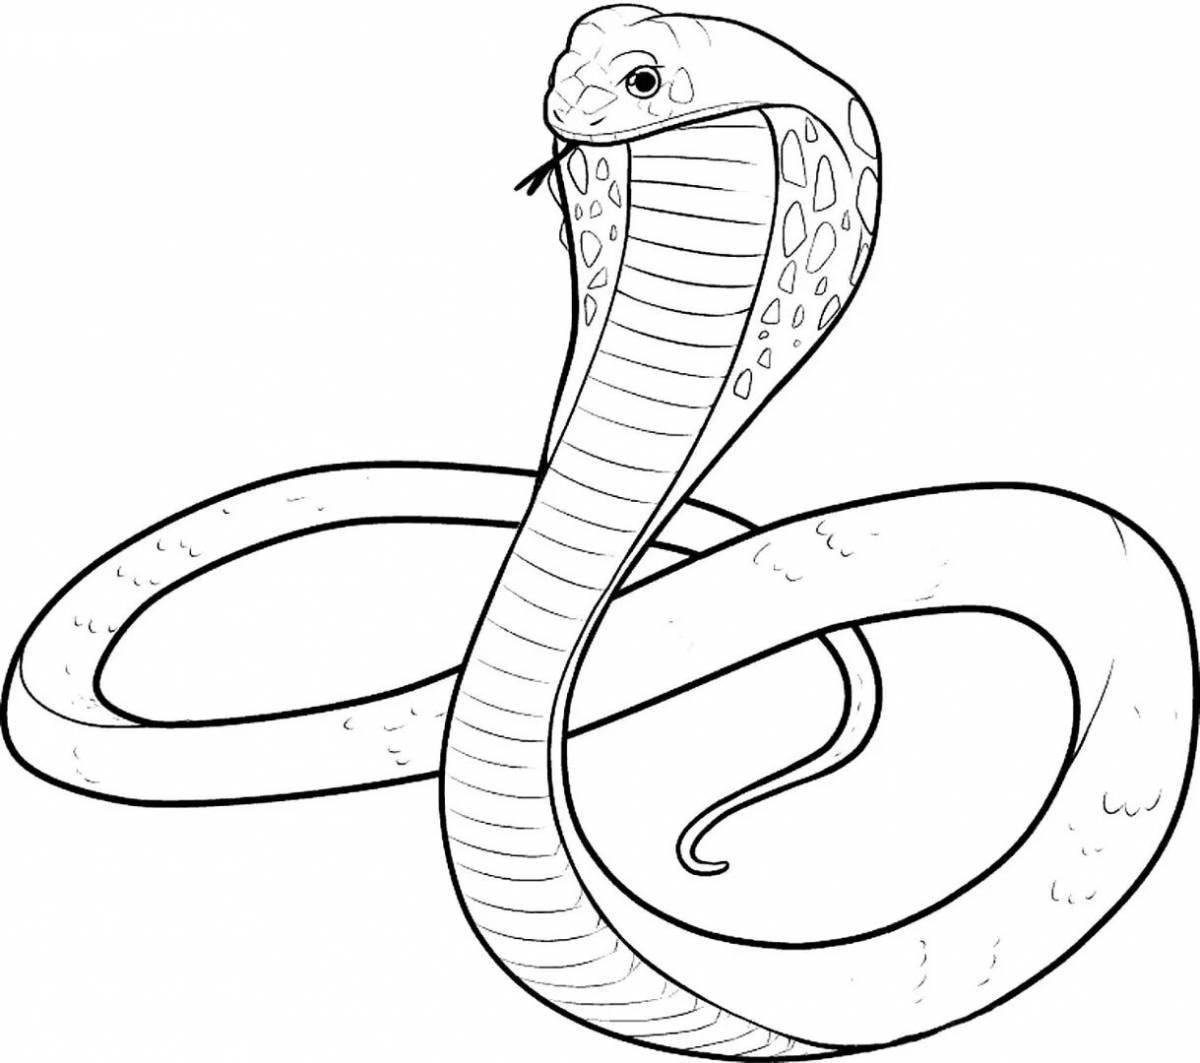 Generous king cobra coloring book